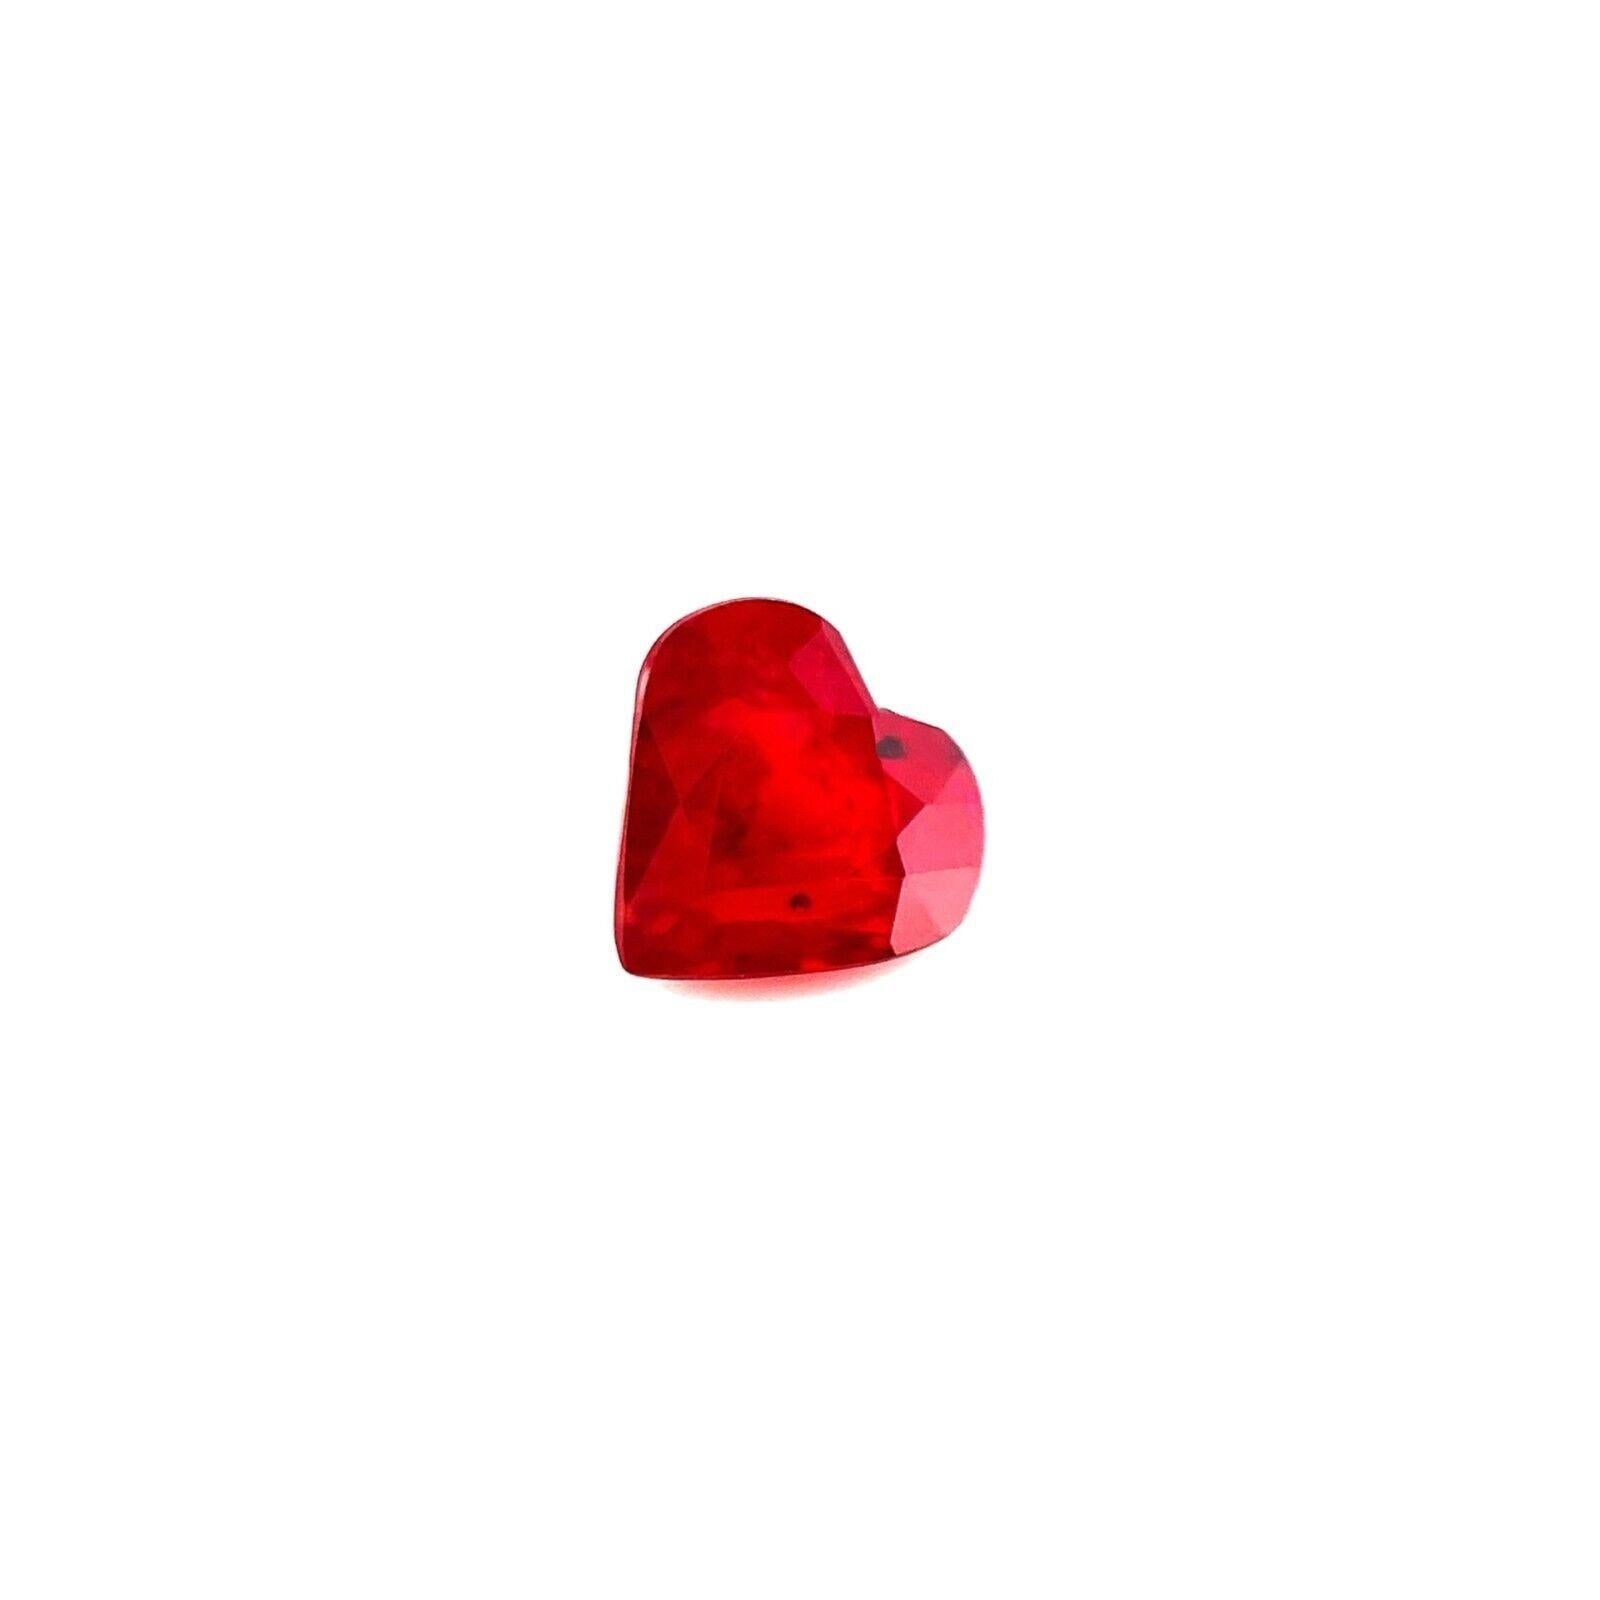 Pierre précieuse rare, rubis rouge profond de 1,16 carat, taille cœur, non sertie, 6,5 x 6 mm

Rubis naturel taillé en cœur d'un rouge profond.
1,16 carat avec une excellente coupe en cœur et une belle couleur rouge cerise.
La pureté de cette pierre